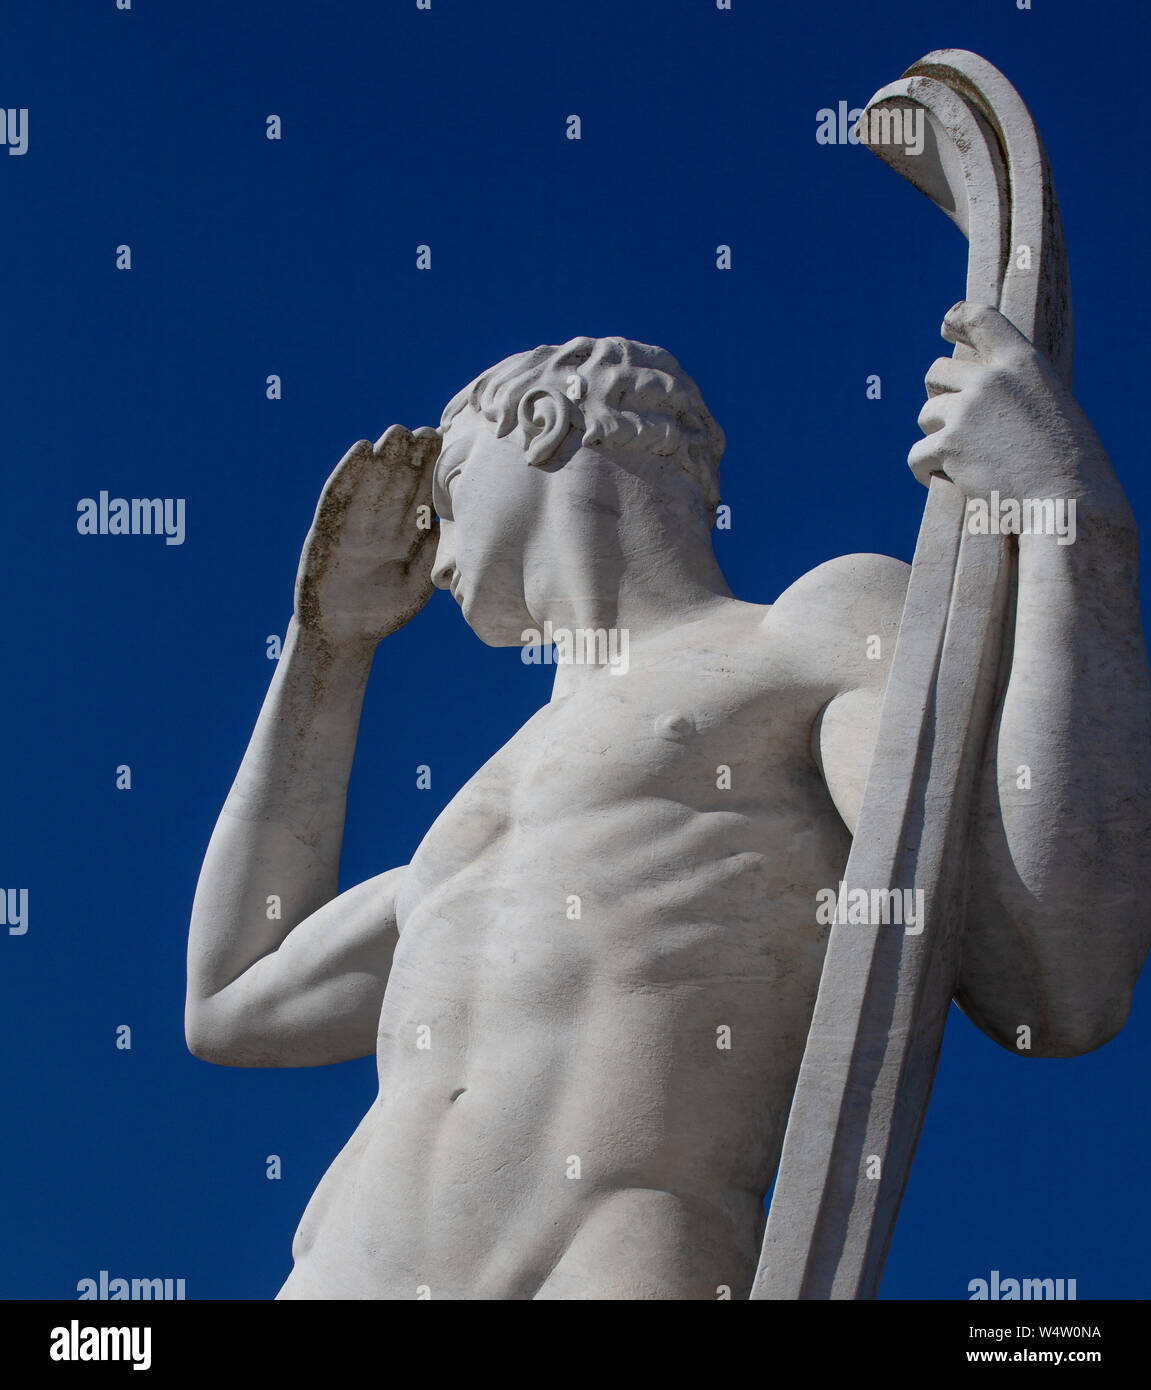 Die Statue der Skifahrer in das Stadio dei Marmi (Marmor Stadion) in Rom. Die Statue ist Holding Skier und schaut in die Ferne vor blauem Himmel. Stockfoto